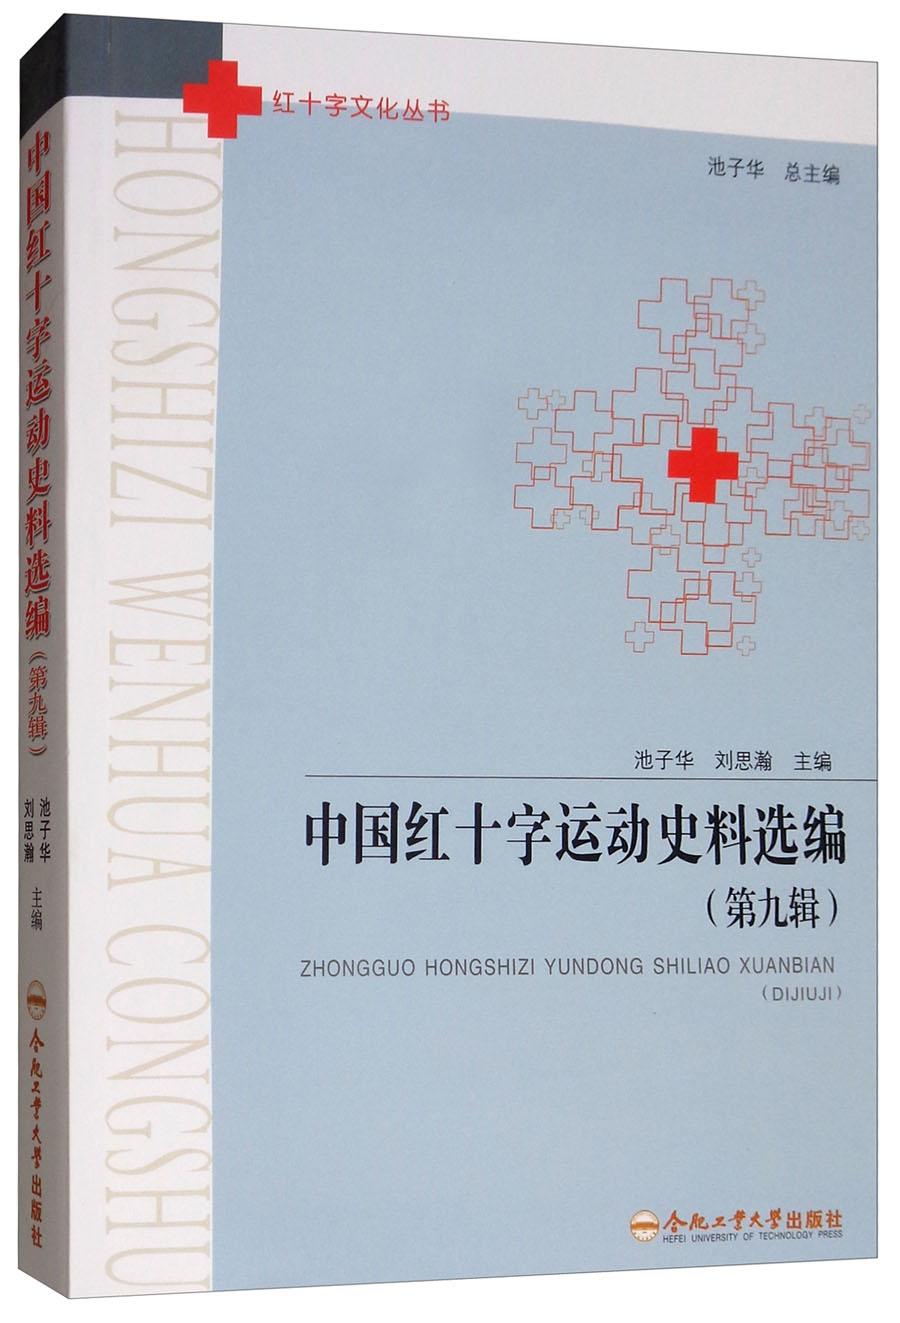 中国红十字运动史料选编9787565042515